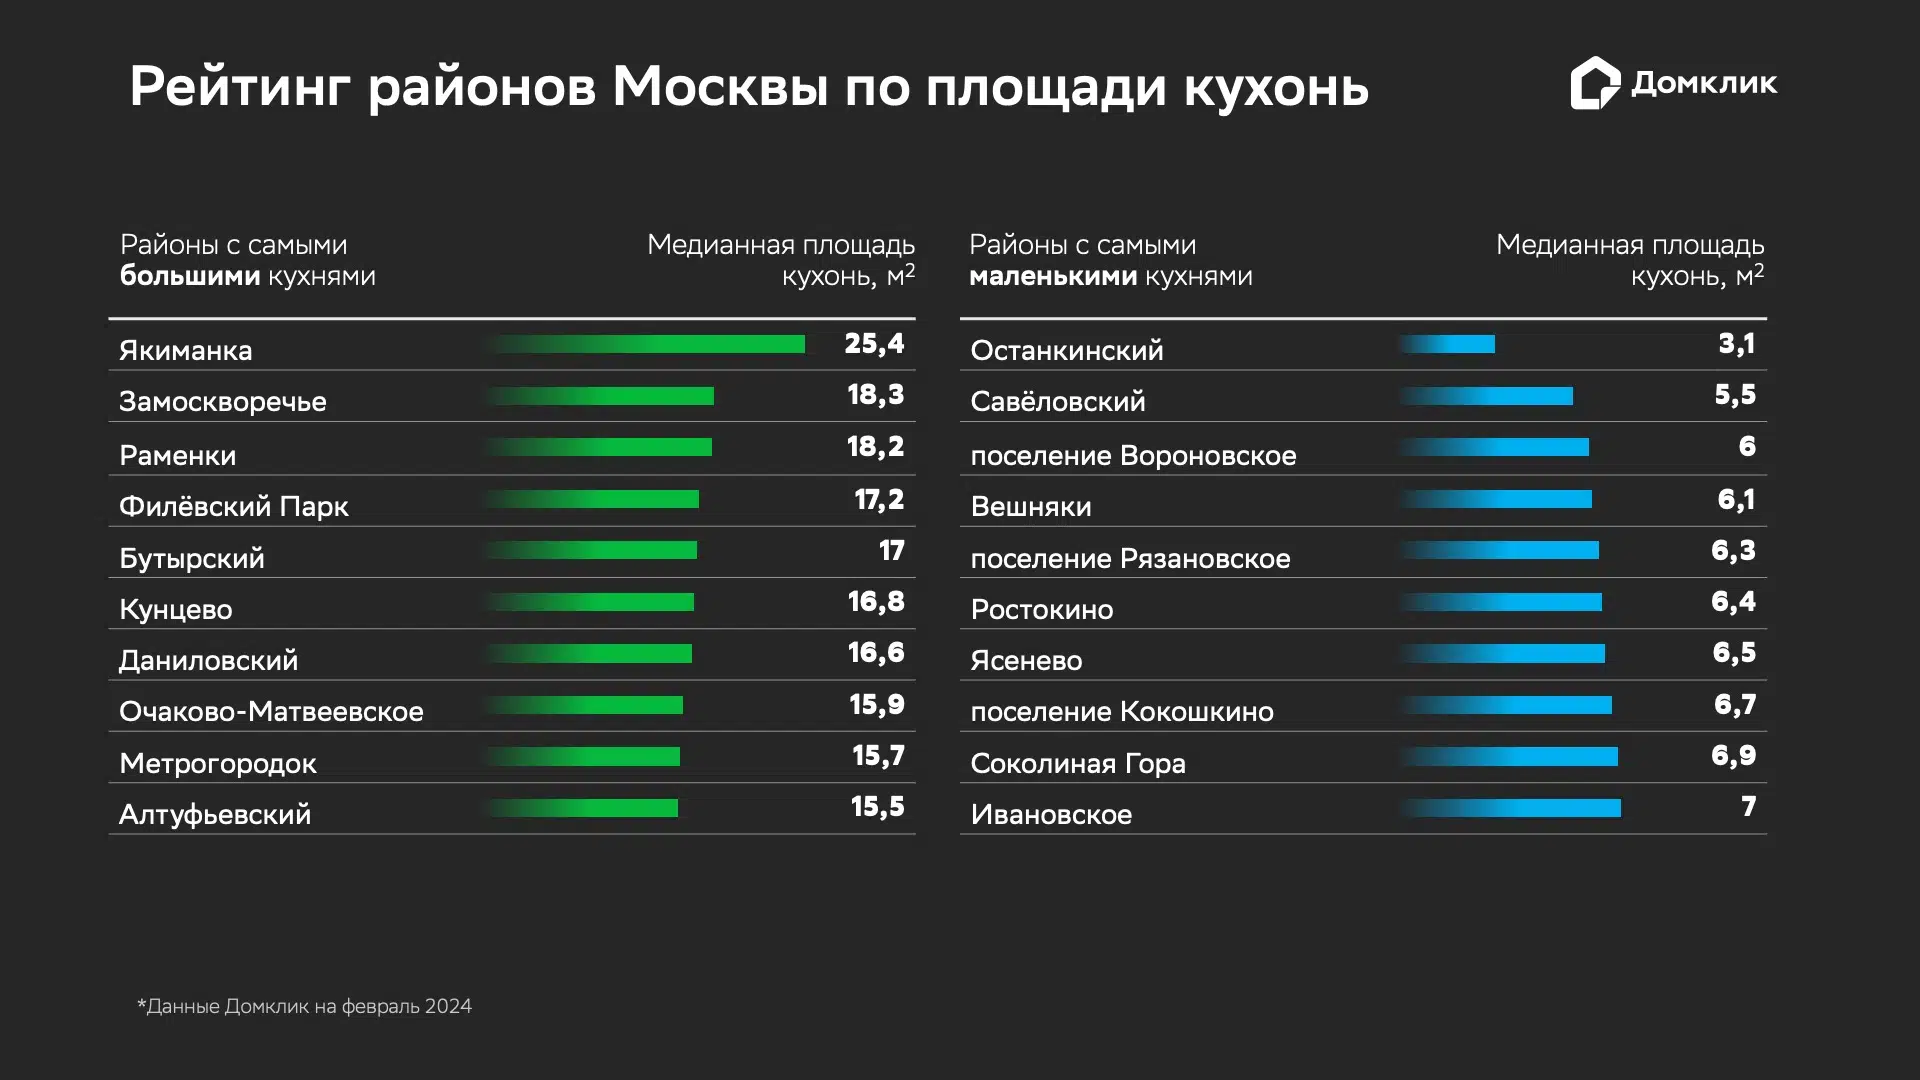 Топ-10 районов Москвы с наибольшей и наименьшей медианной площадью кухонь (в кв. м) на рынке предложения по состоянию на февраль 2024 года. Данные Домклик